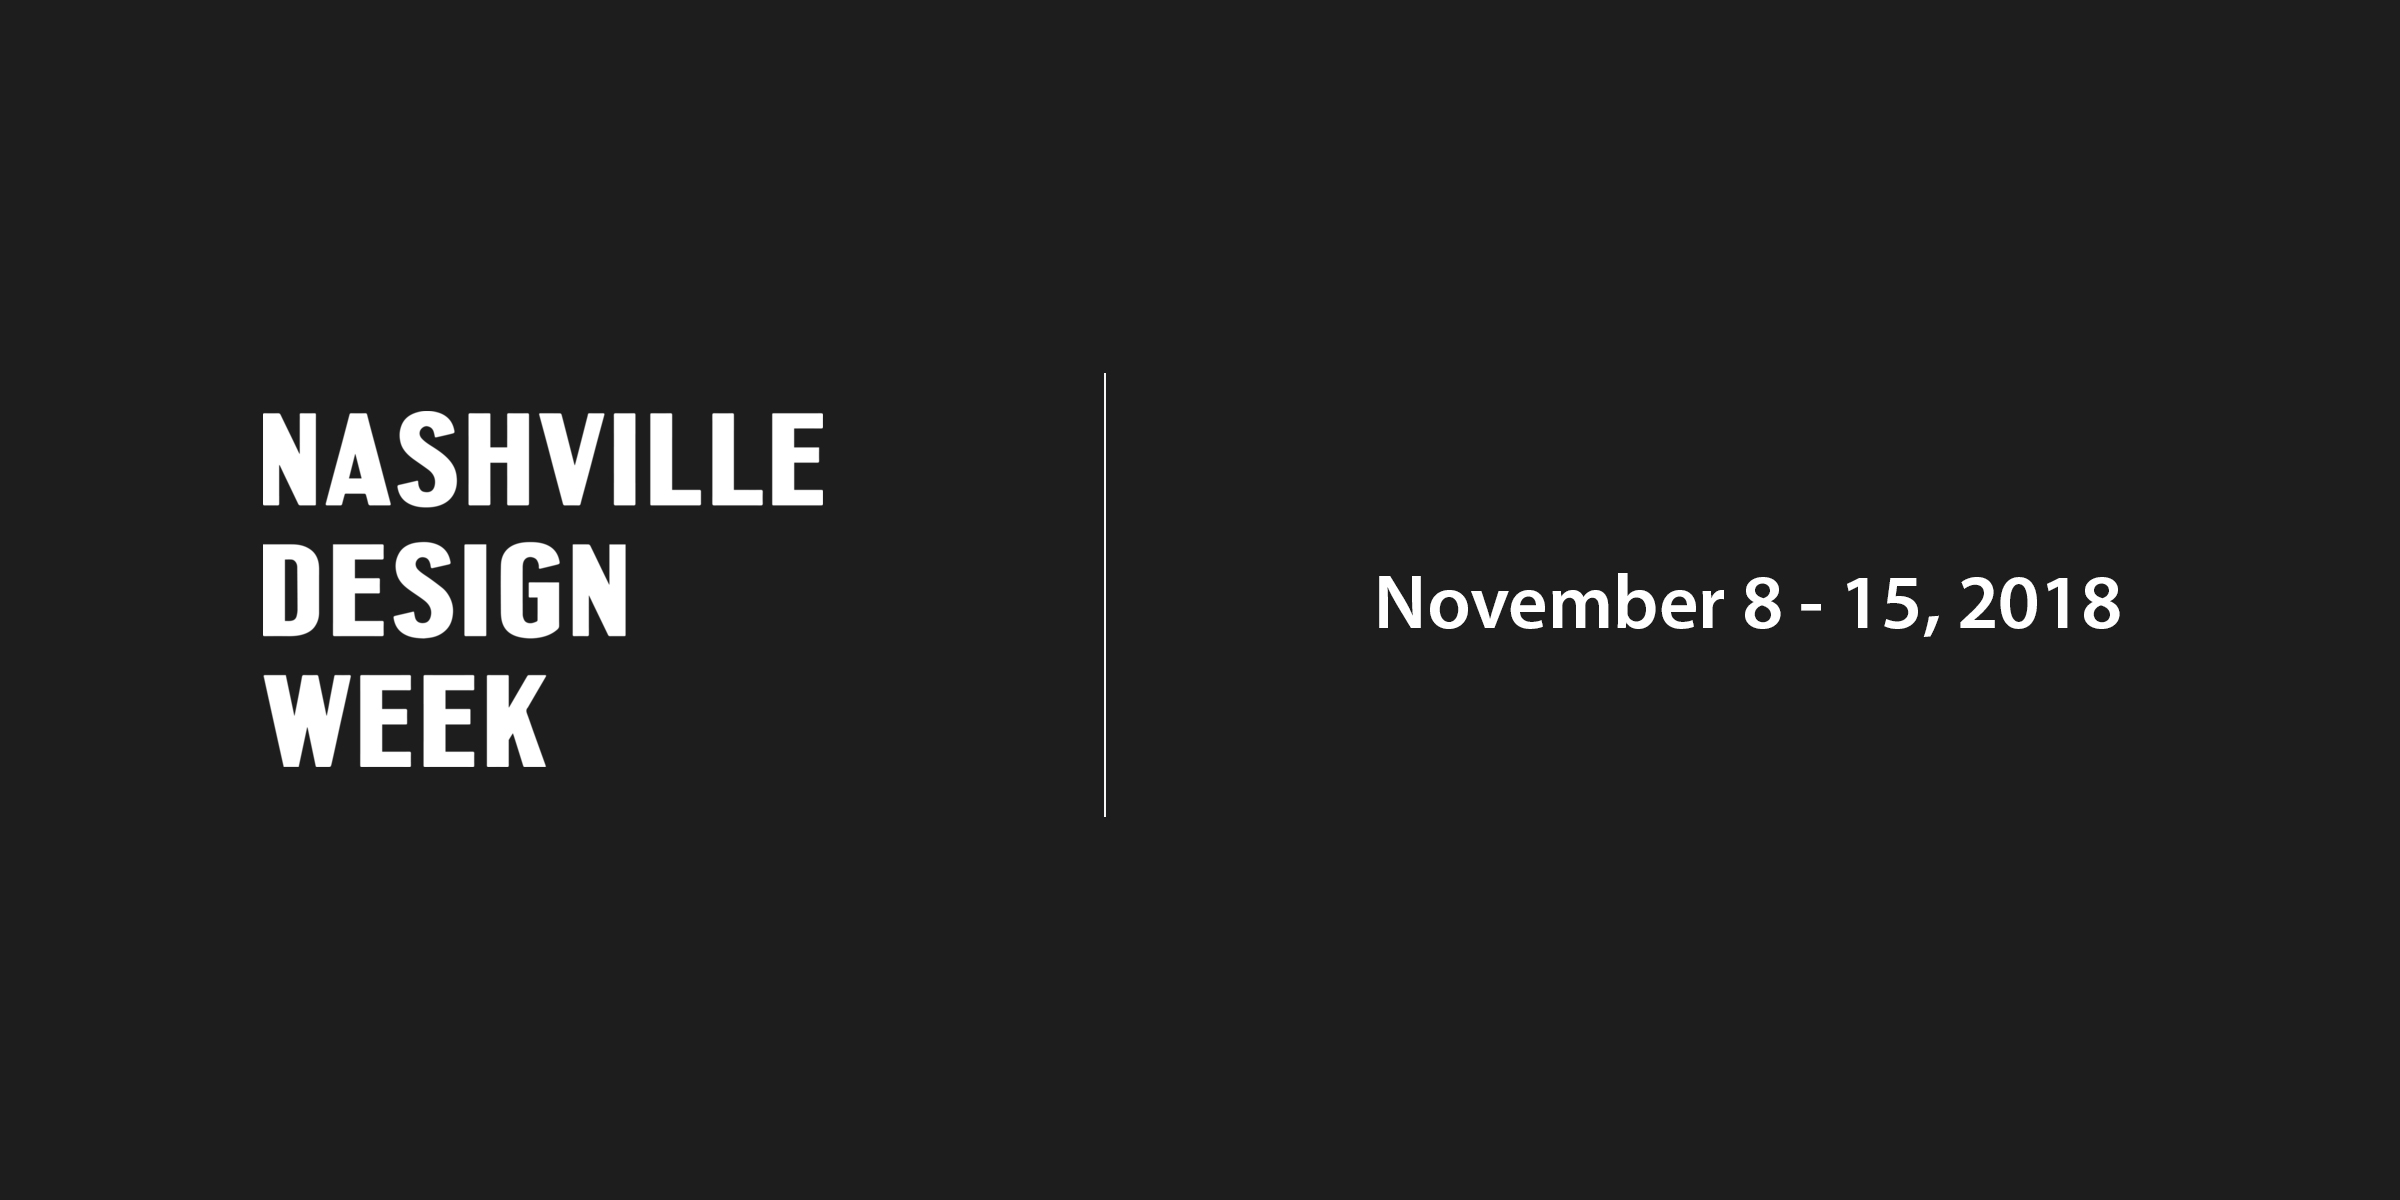 Join DesignUps for Nashville Design Week